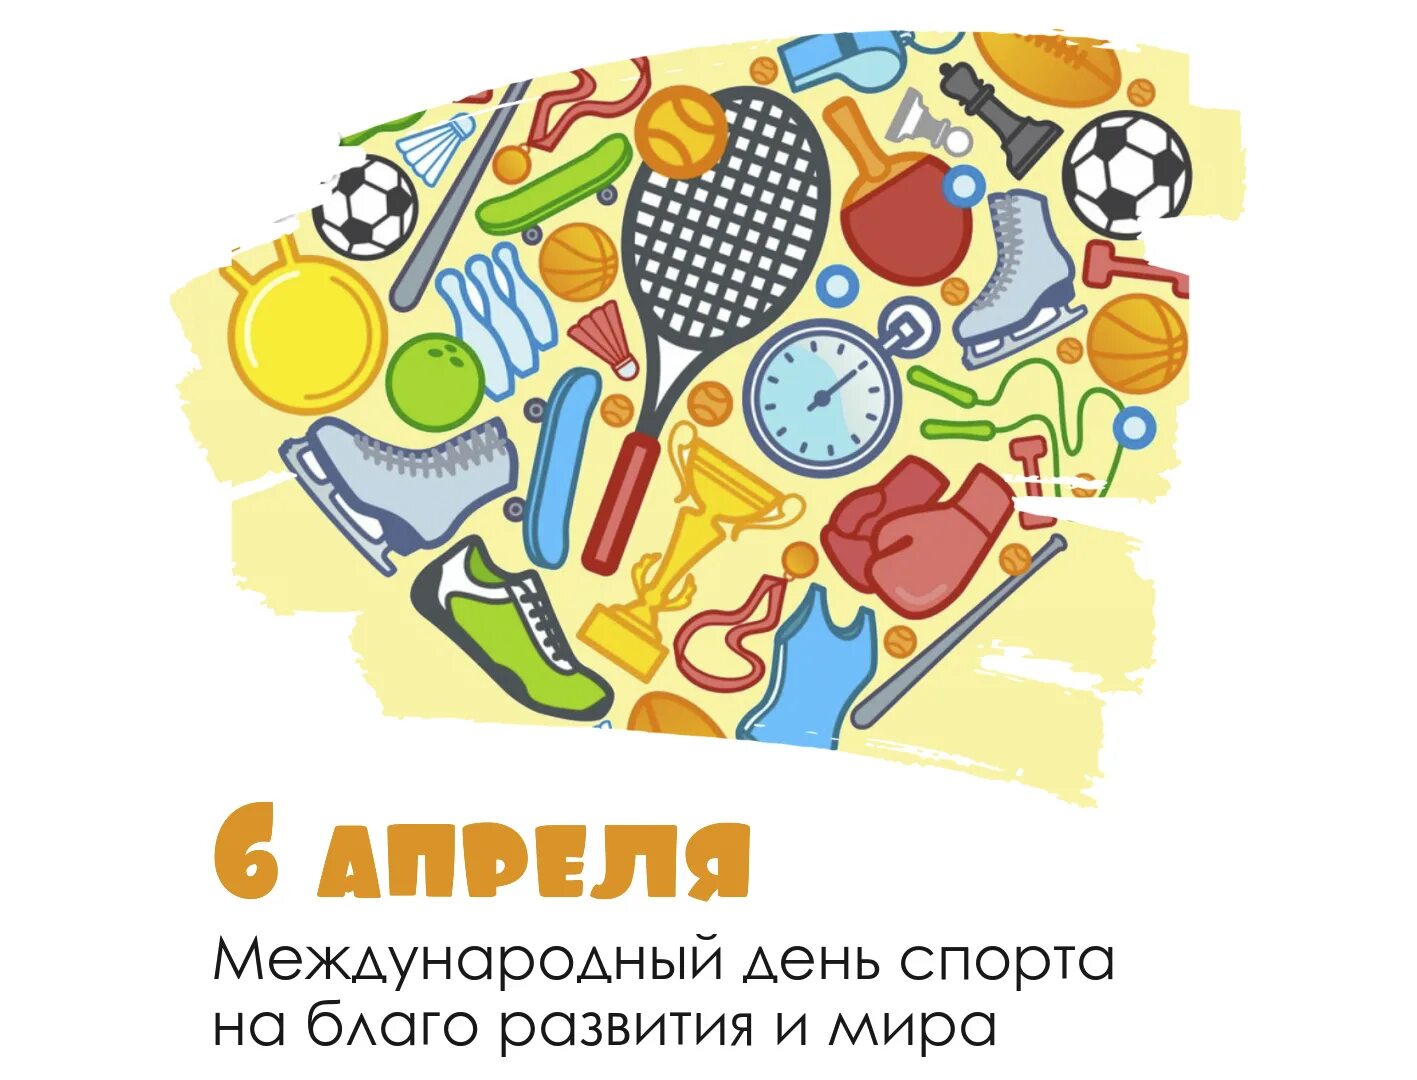 6 апреля международный день спорта. Всемирный день спорта.